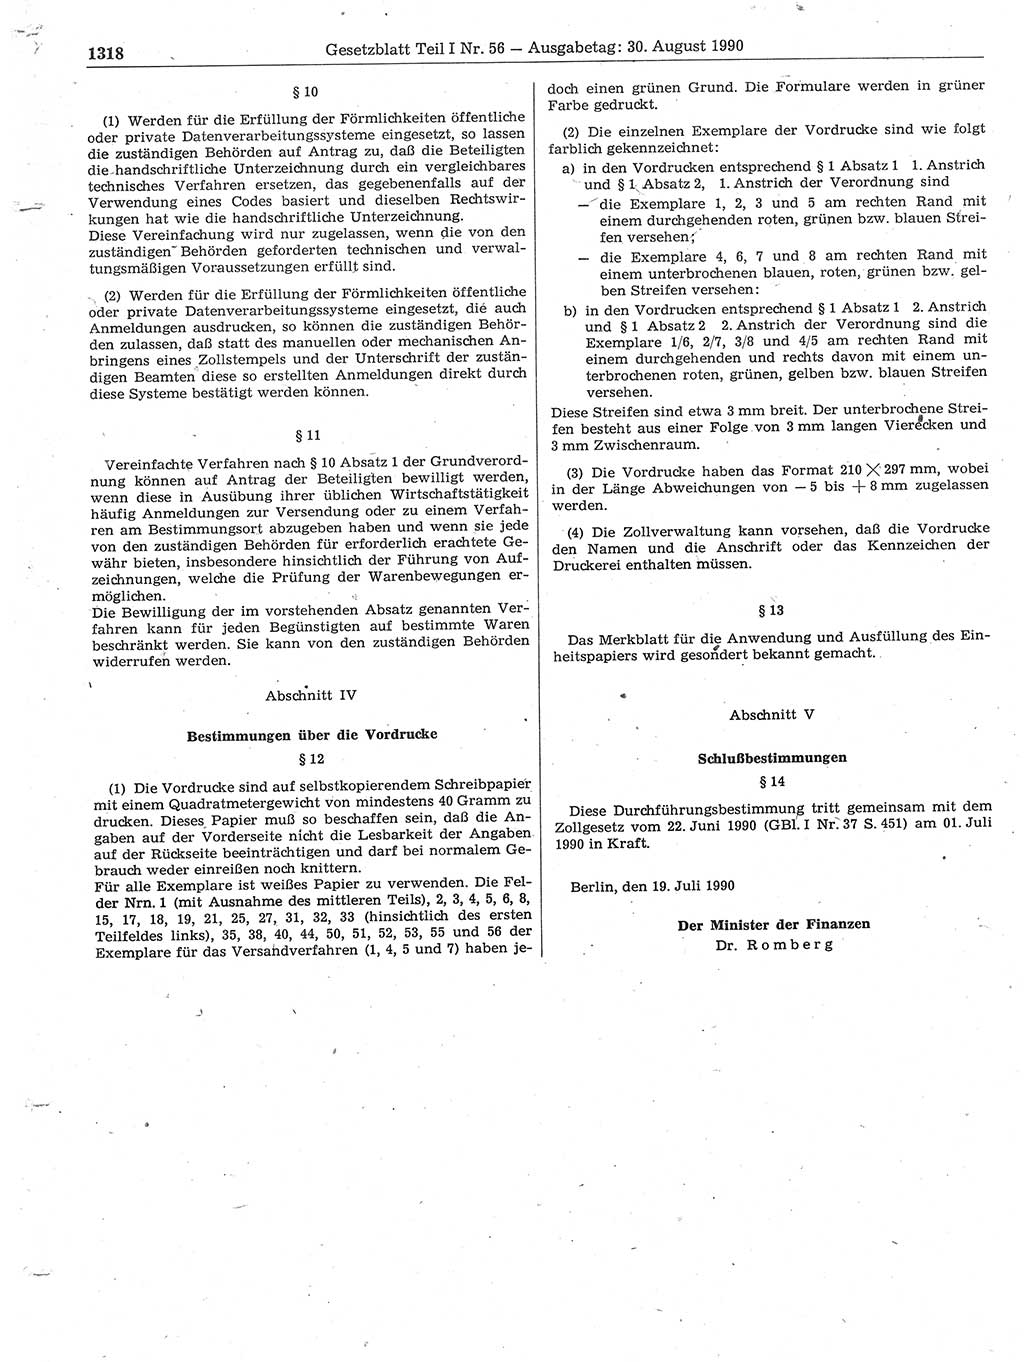 Gesetzblatt (GBl.) der Deutschen Demokratischen Republik (DDR) Teil Ⅰ 1990, Seite 1318 (GBl. DDR Ⅰ 1990, S. 1318)